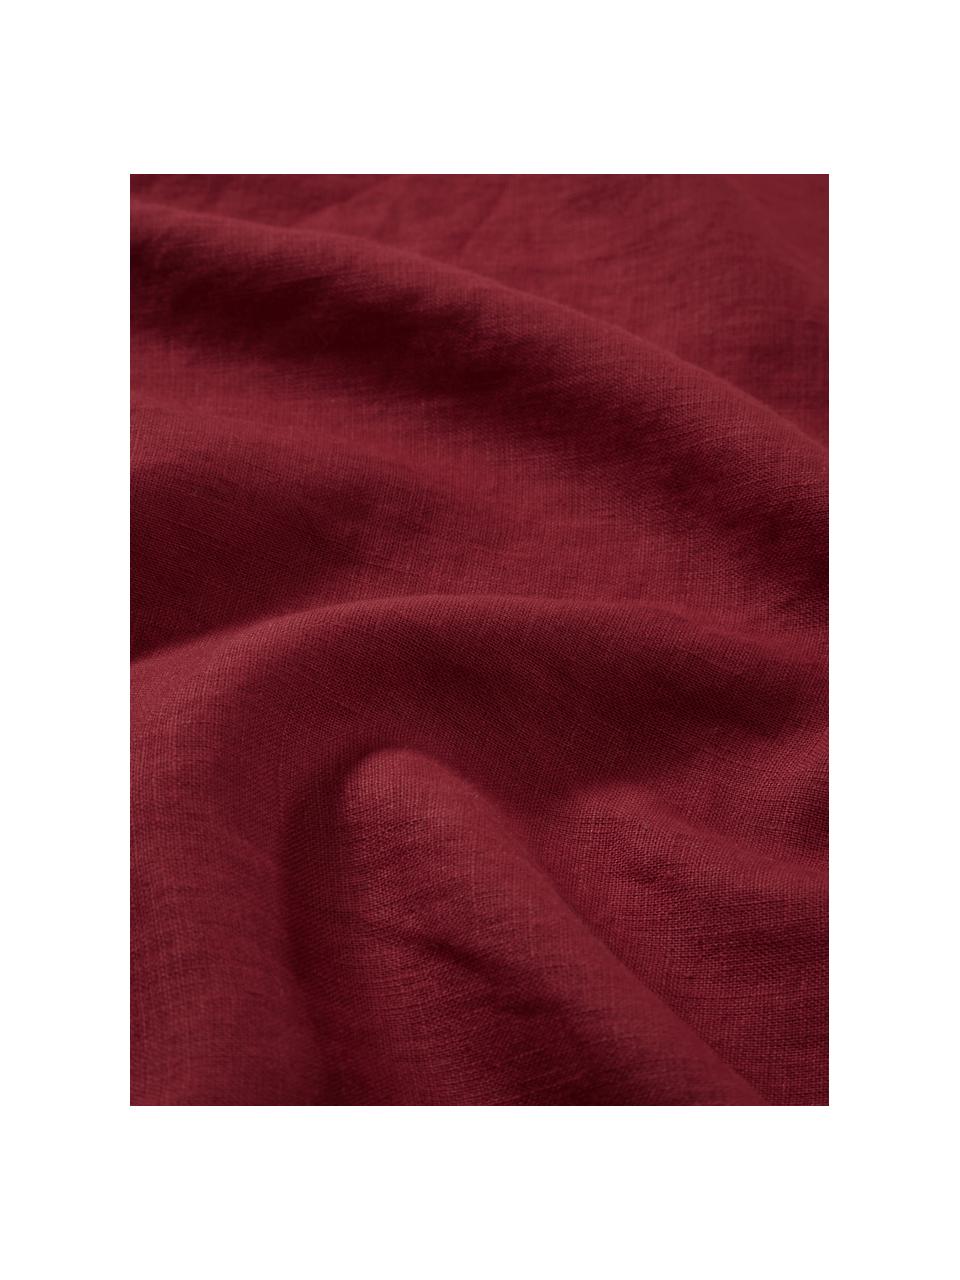 Lněné ubrousky Pembroke, 2 ks, 100 % len, Červená, Š 42 cm, D 42 cm